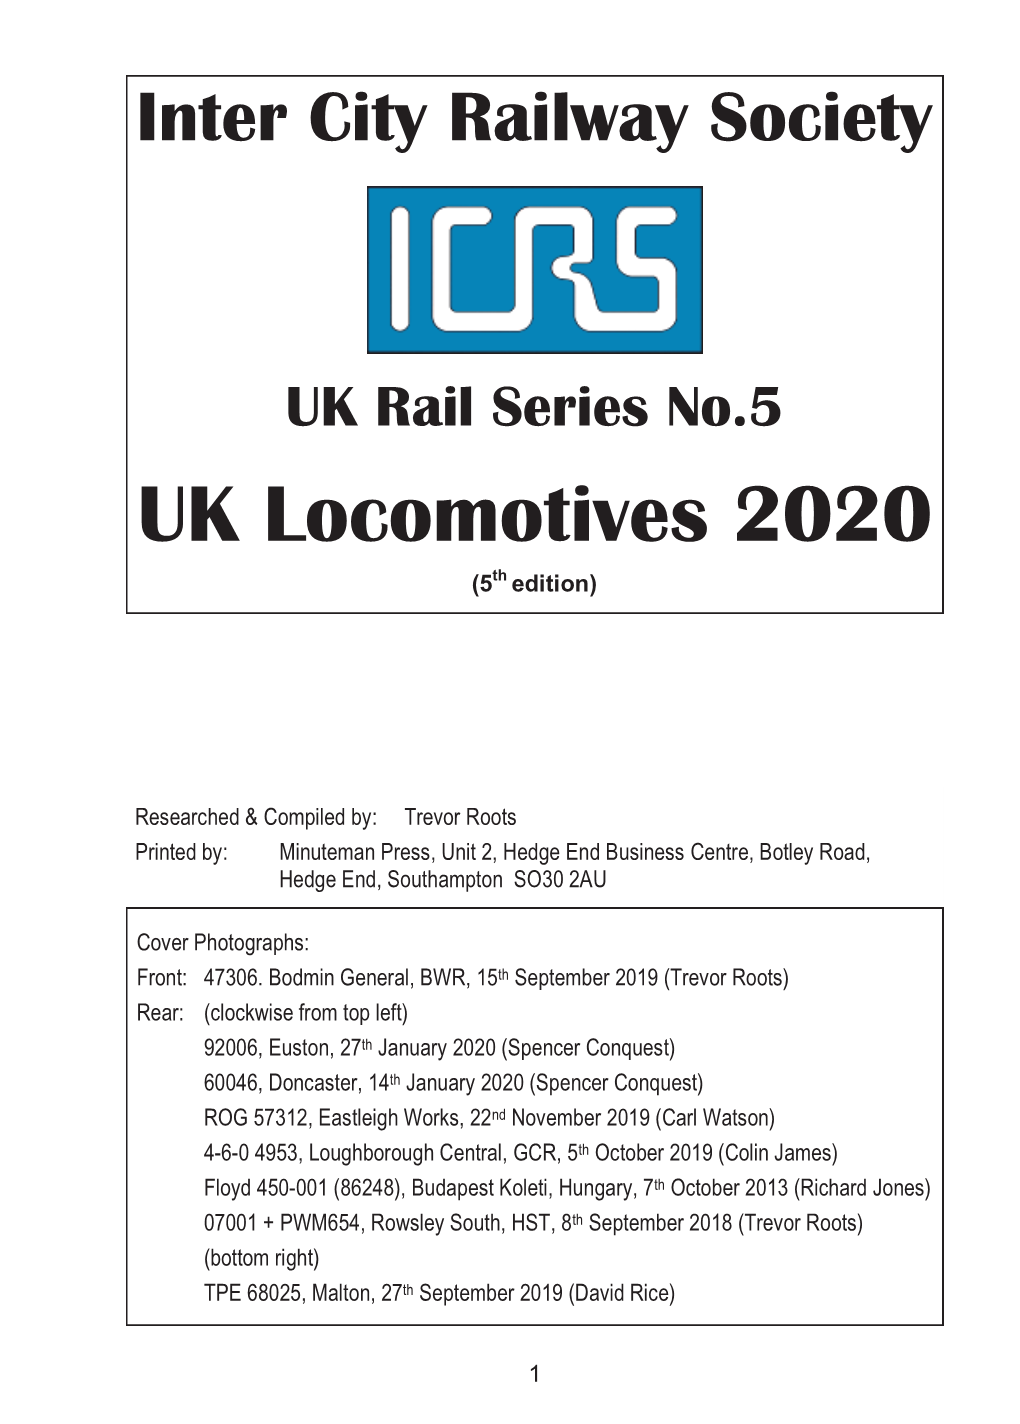 UK Locomotives 2020